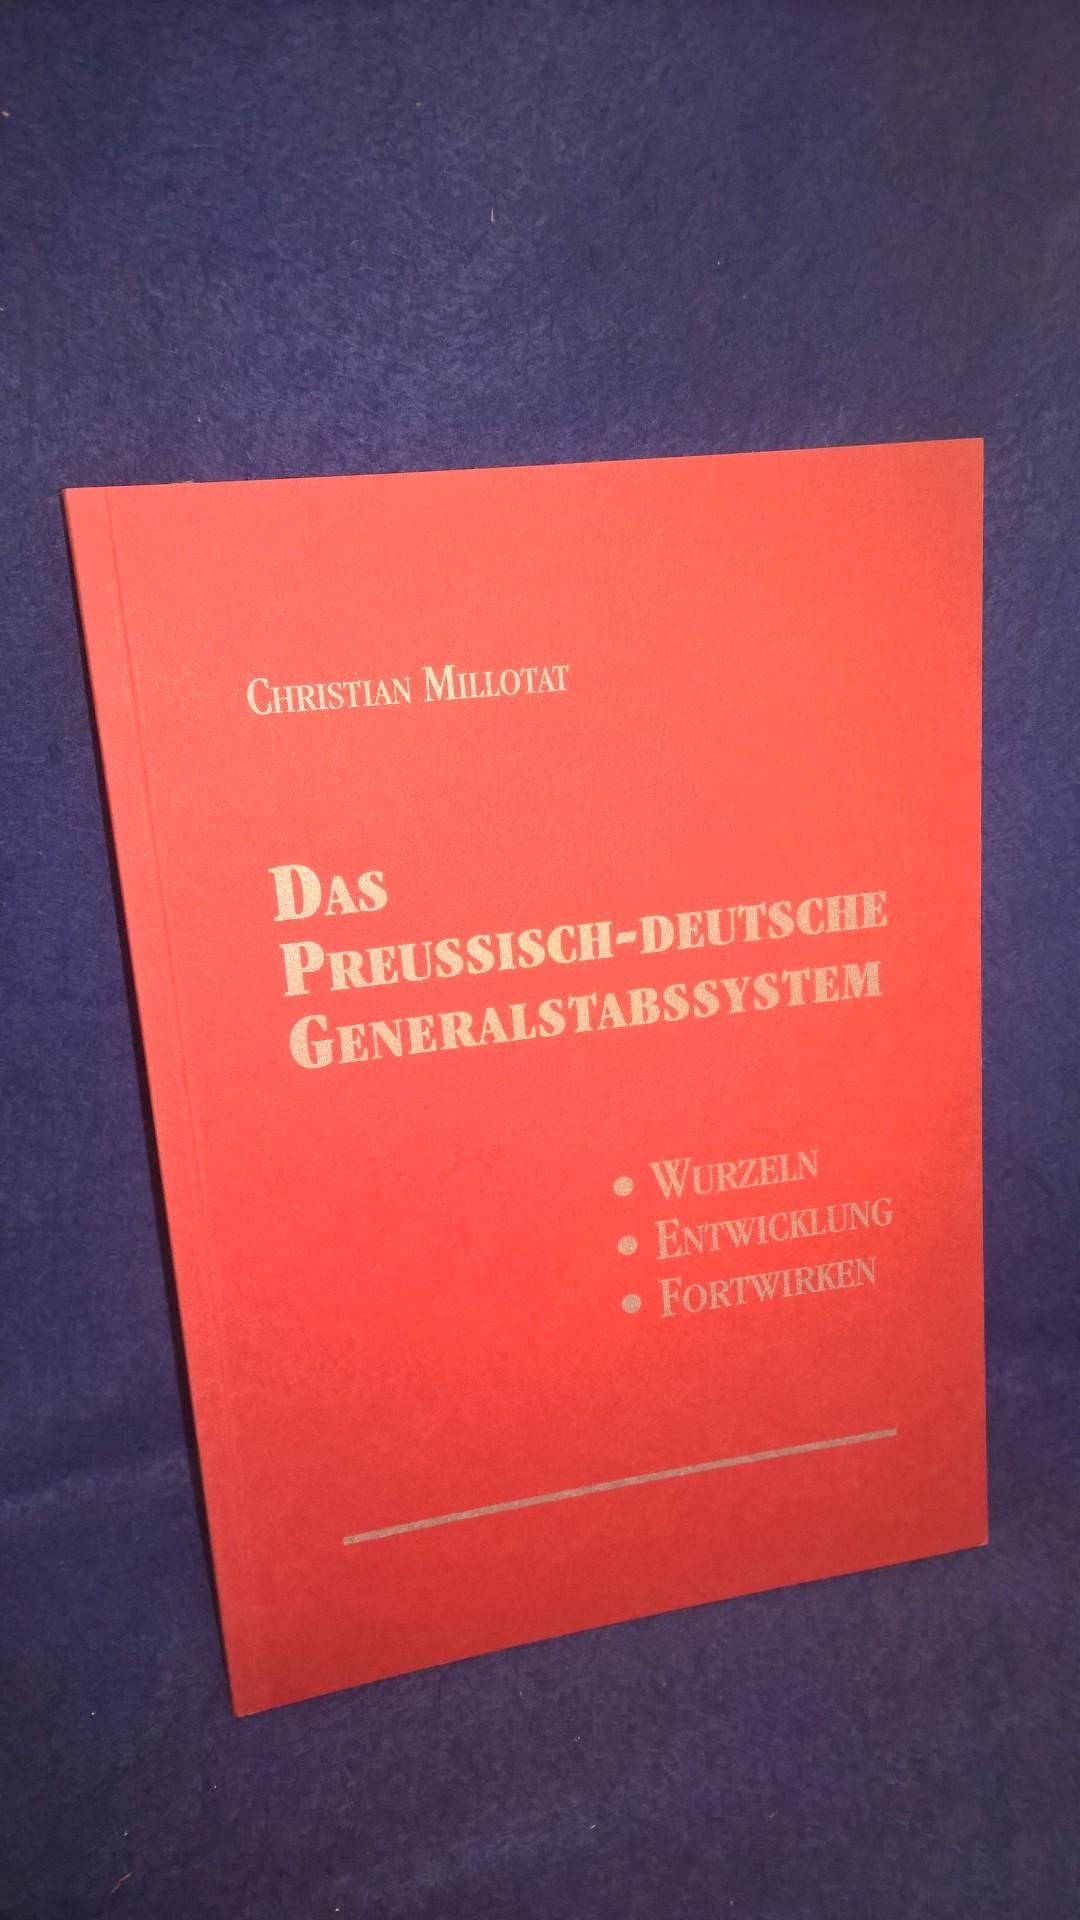 Das Preussisch-Deutsche Generalstabssystem - Wurzeln - Entwicklung - Fortwirken.